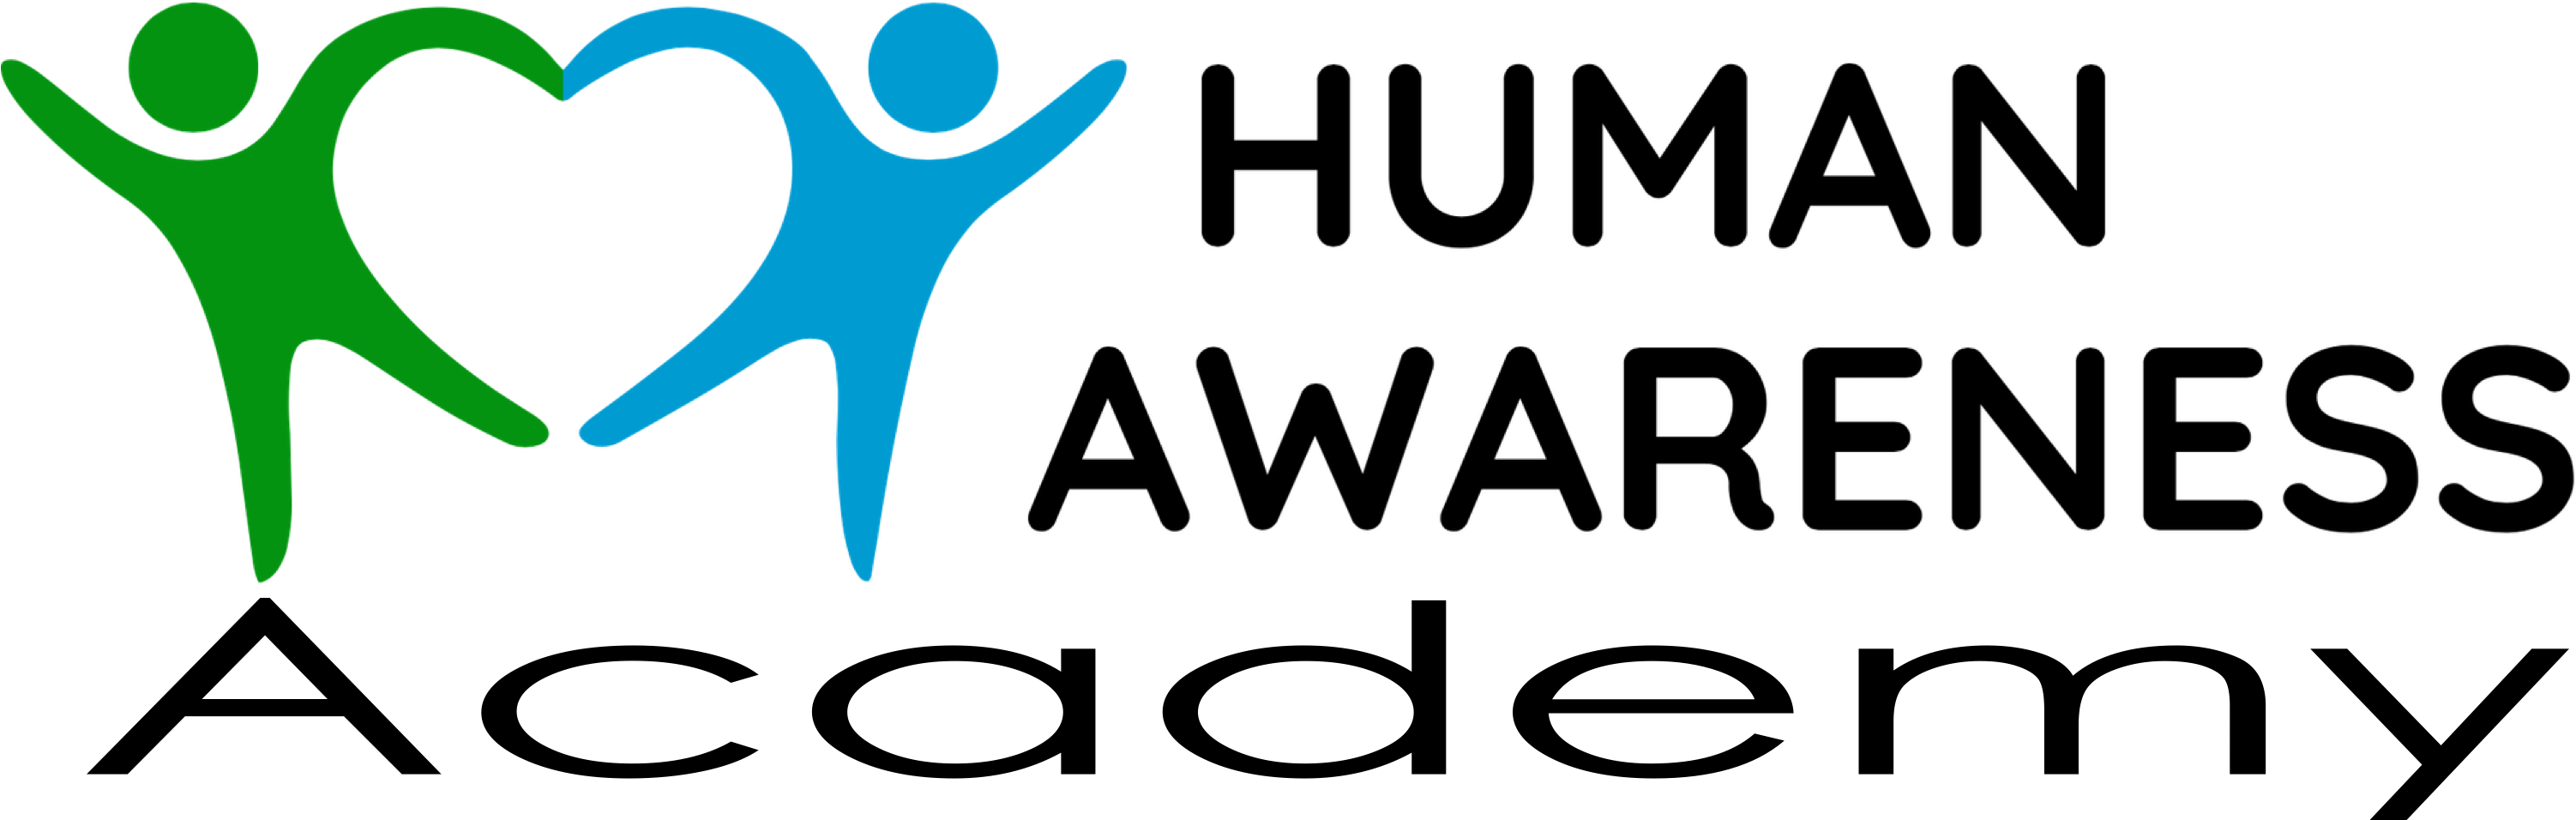 Human Awareness Academy logo